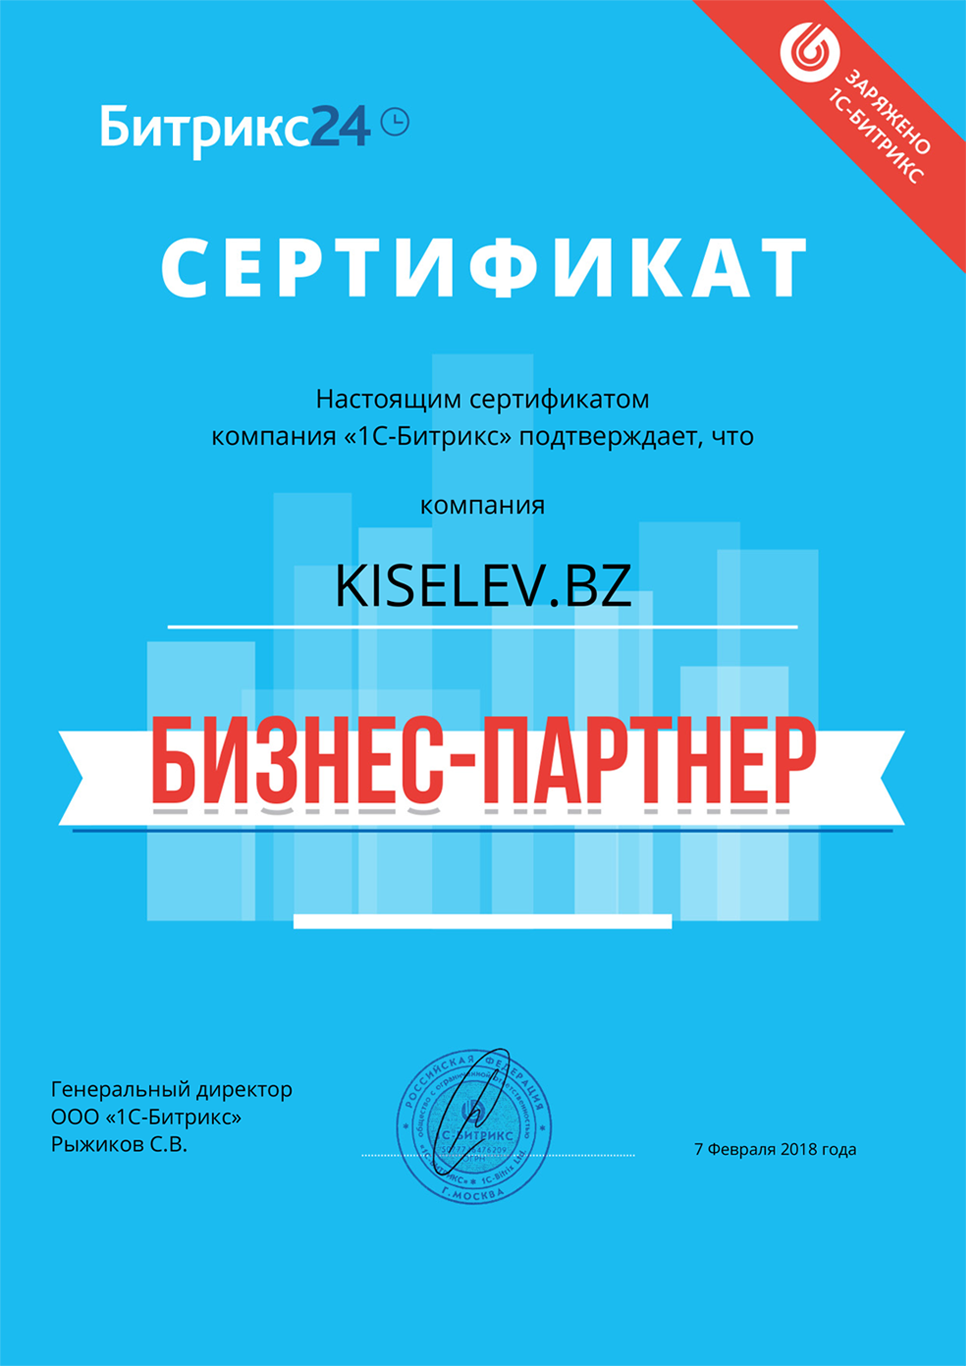 Сертификат партнёра по АМОСРМ в Подпорожье